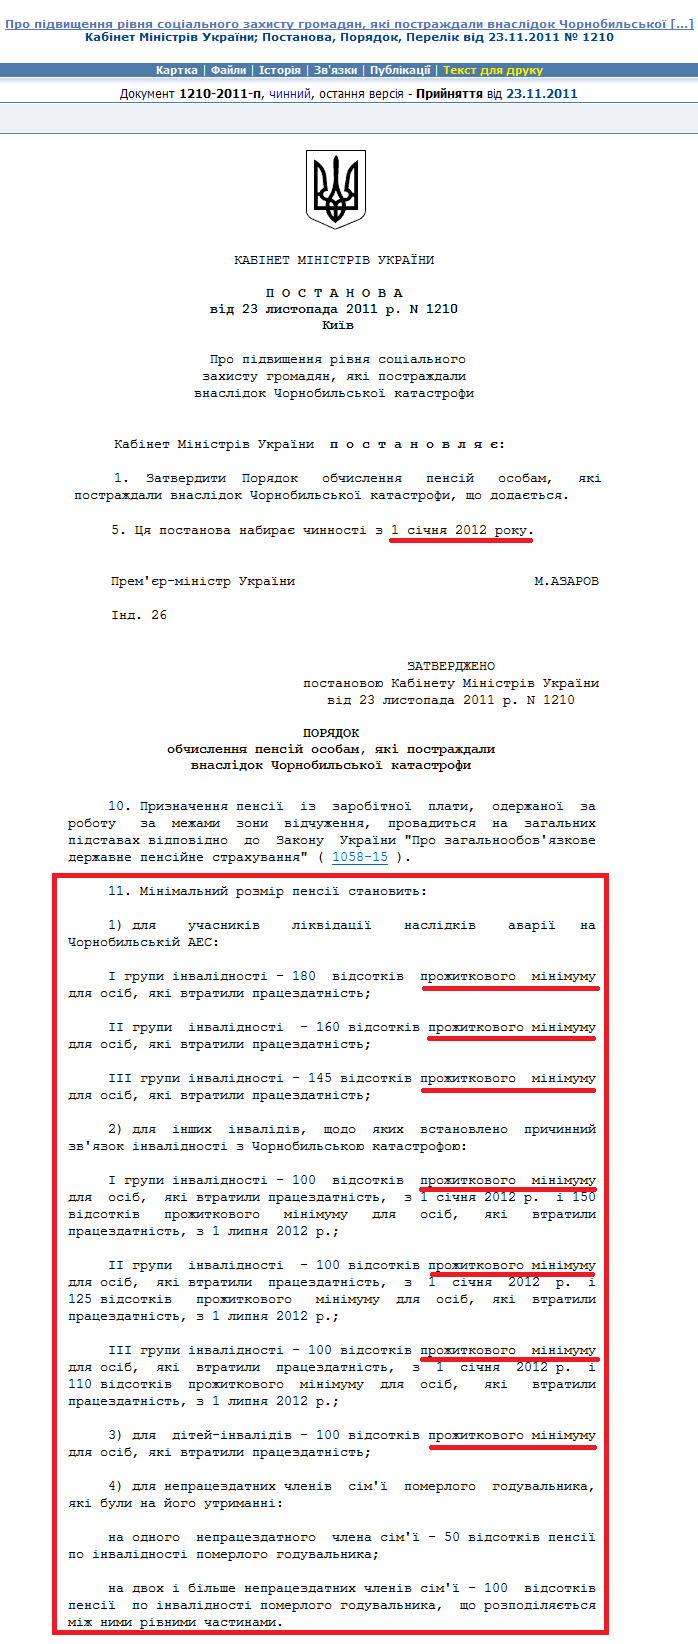 http://zakon2.rada.gov.ua/laws/show/1210-2011-%D0%BF